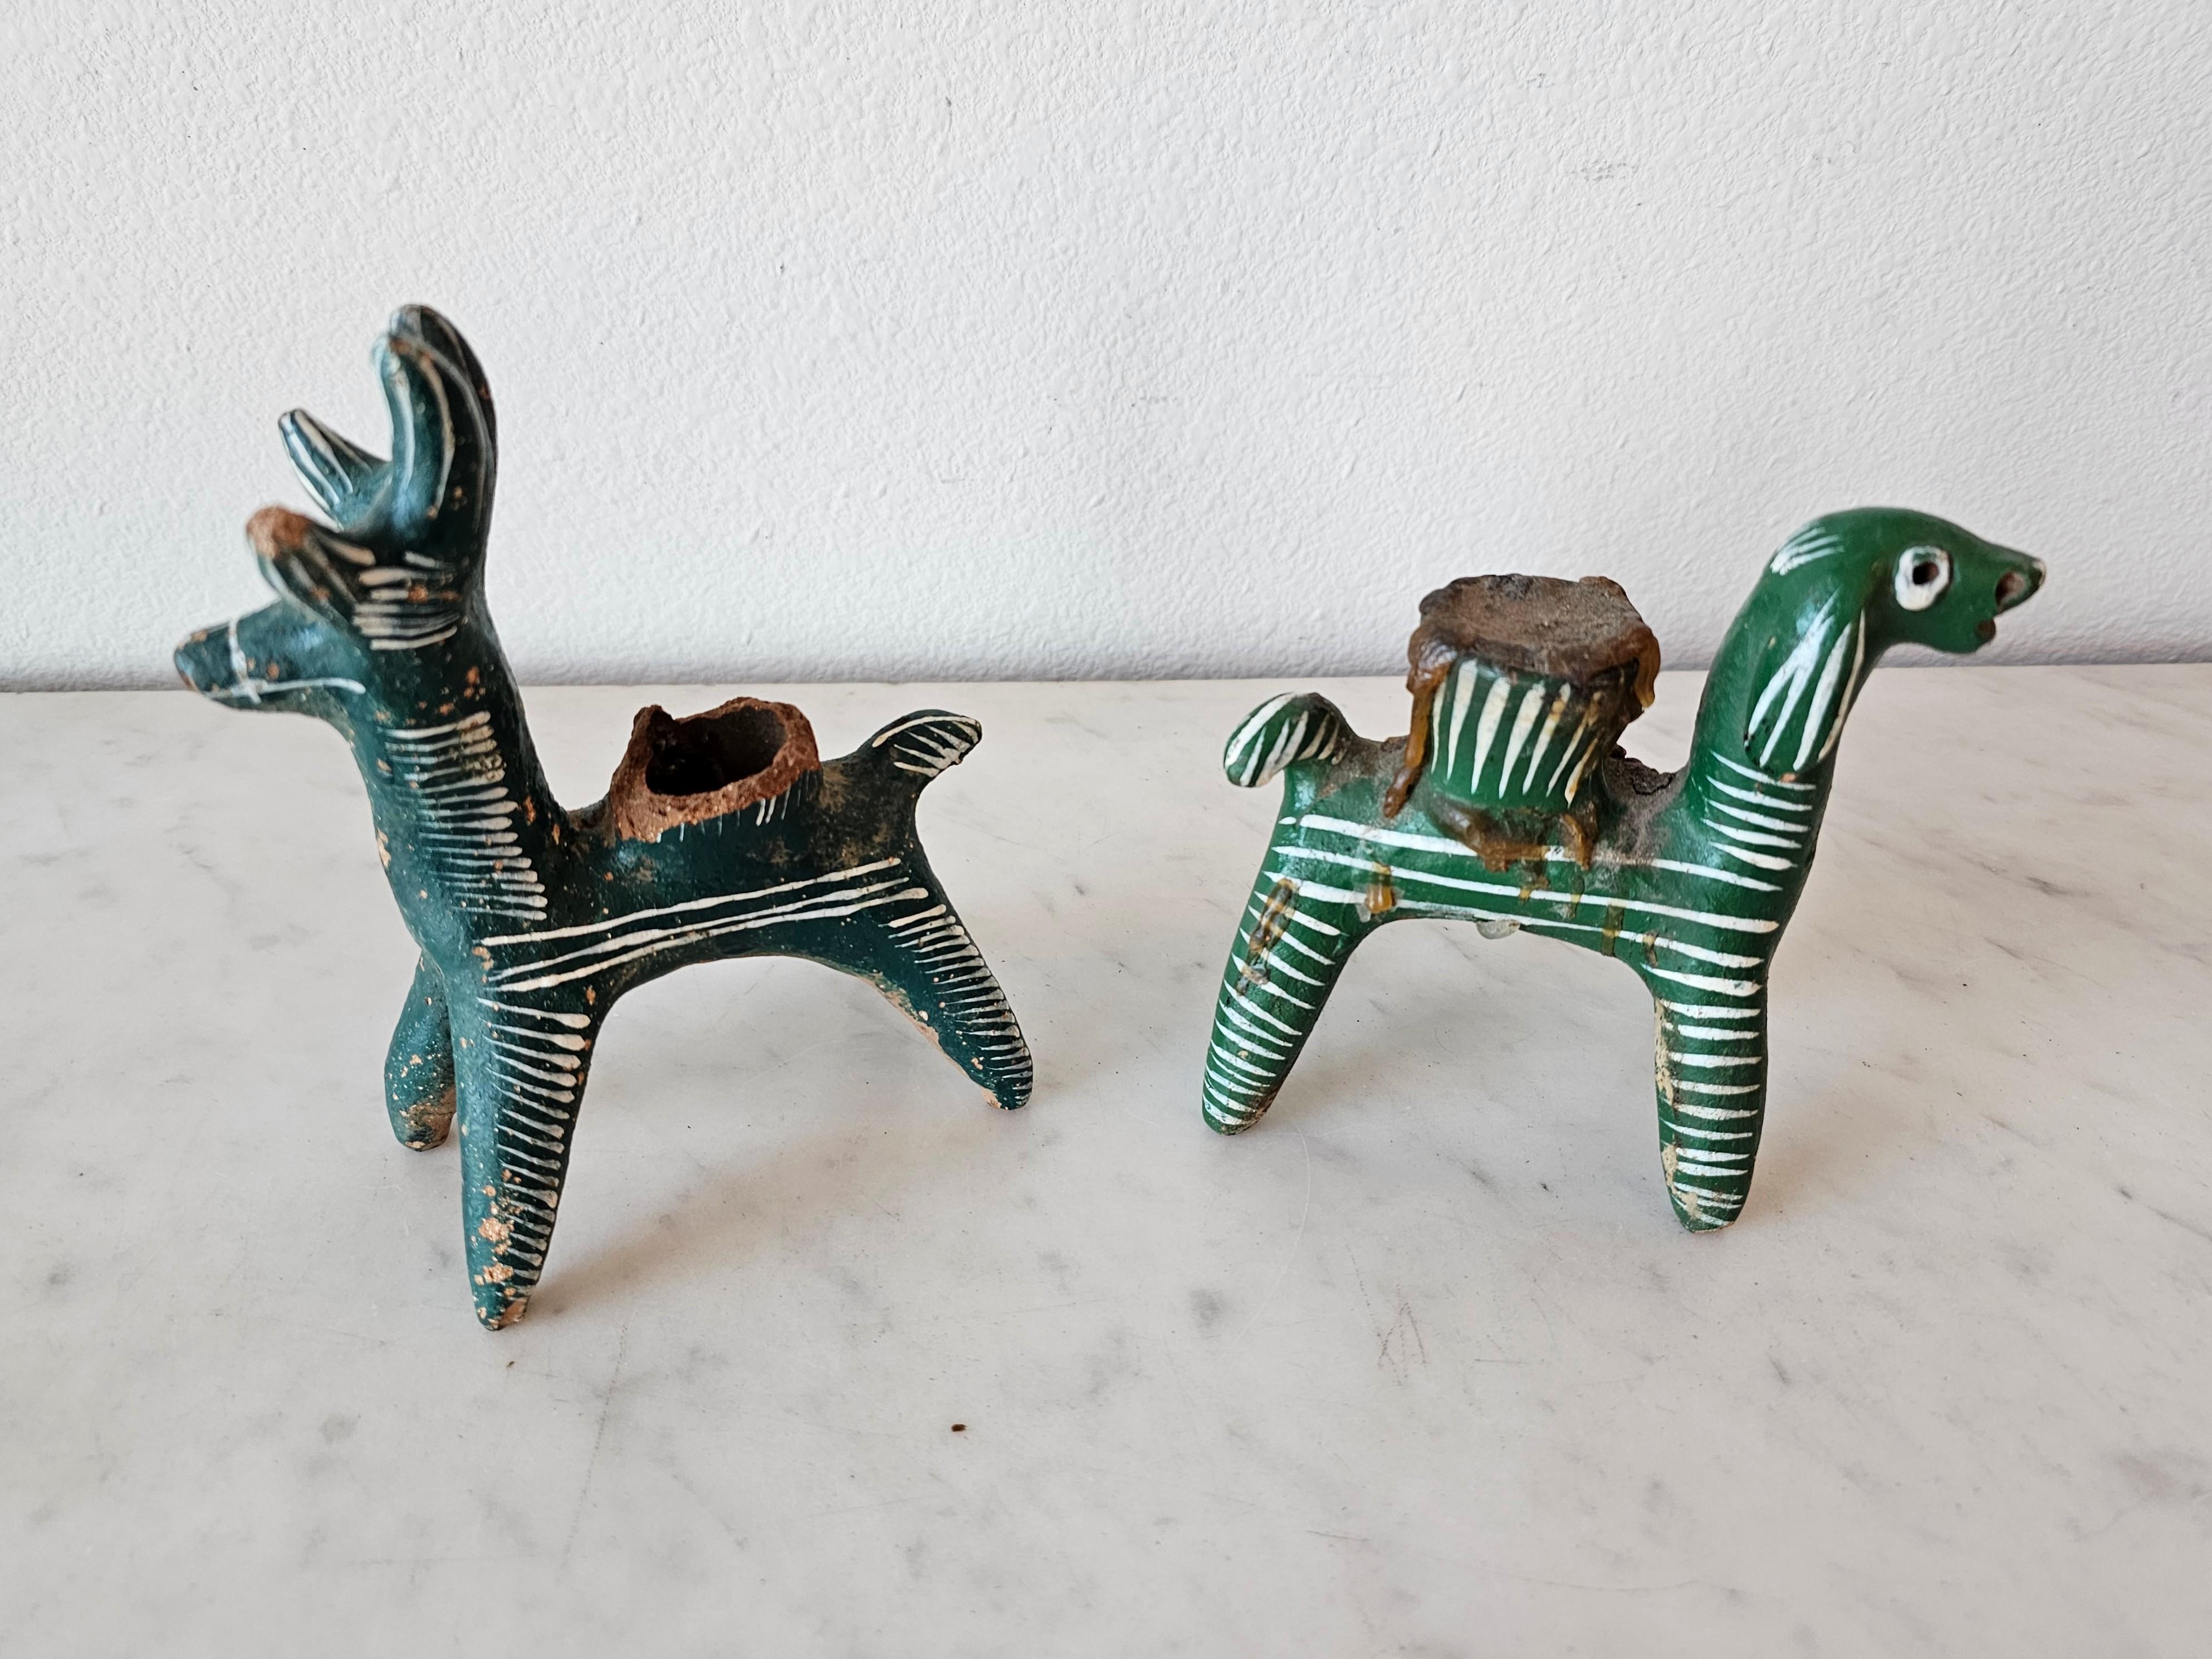 Ein sehr charmantes Paar von zwei seltenen und skurrilen indigenen Nahua Völkern Keramik Tier Volkskunst Kerzenhalter.

Handgefertigt im Dorf Chililico, Hidalgo, Zentralmexiko, primitives, leicht gebranntes Steingut, figurale, skulpturale Form,